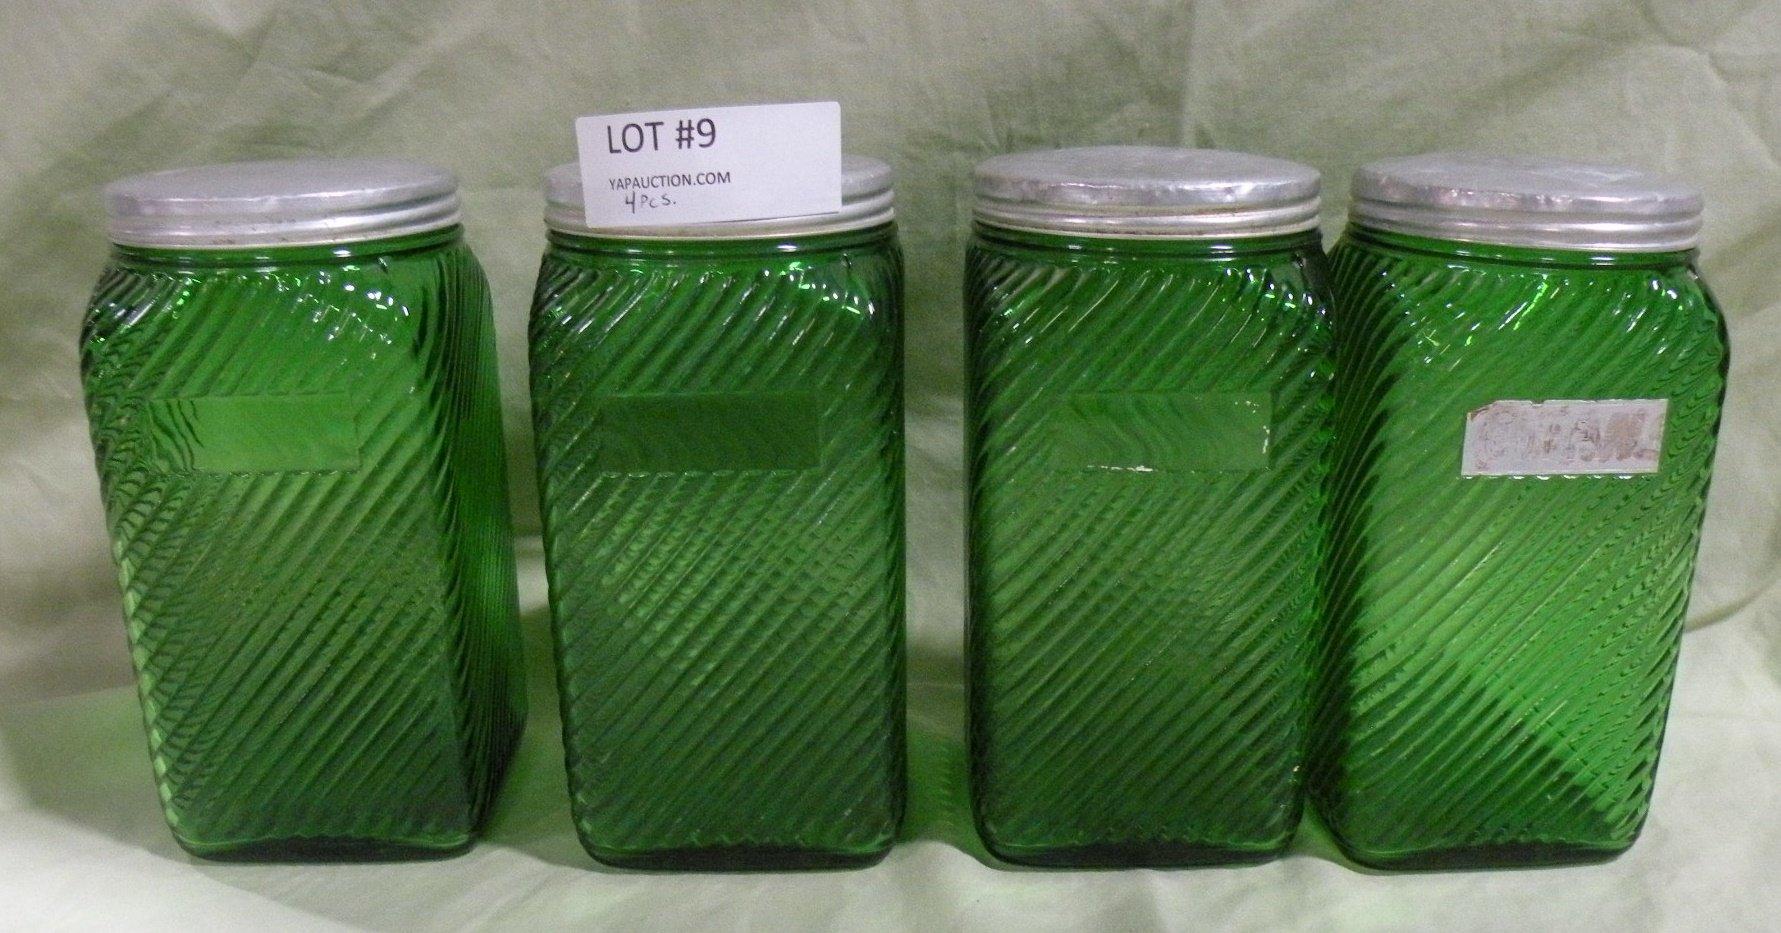 4 PIECE VTG. GREEN GLASS CANISTER SET W/ALUMINUM LIDS